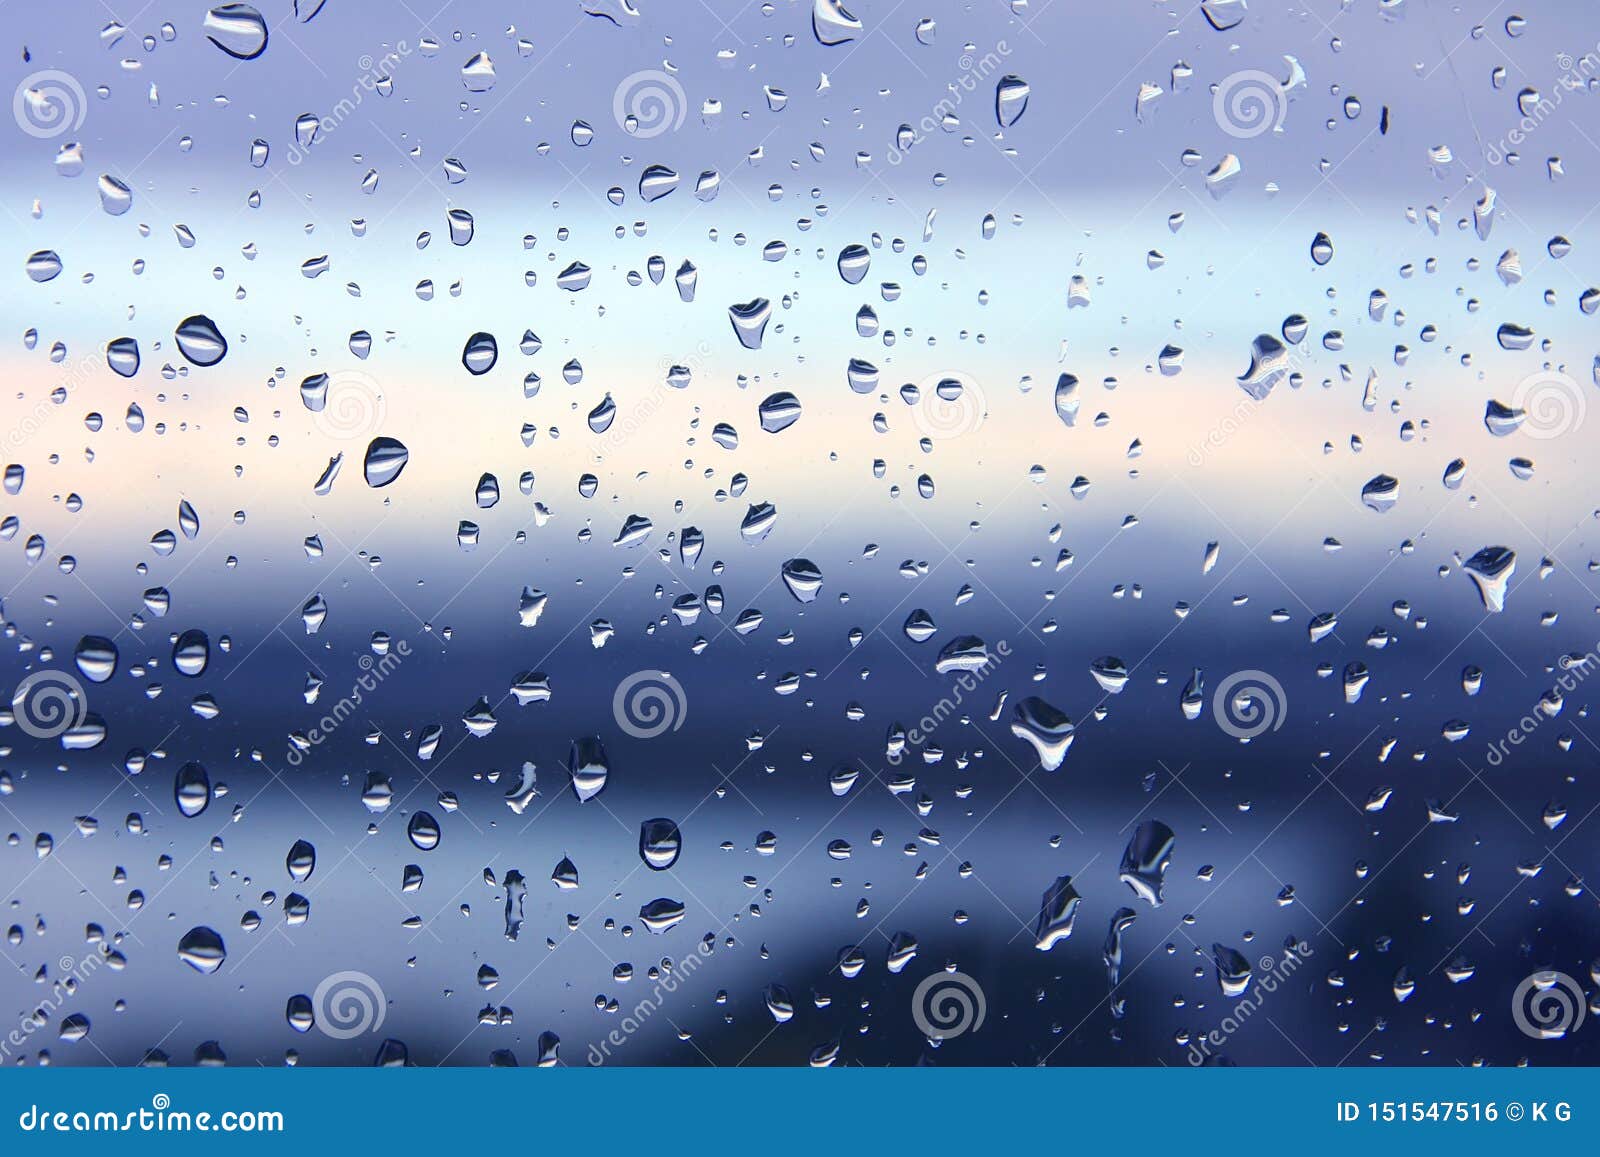 雨后窗玻璃滴水 背景日落明显模糊田园诗般的宁静自然壁纸天气库存照片 图片包括有宏指令 橙色